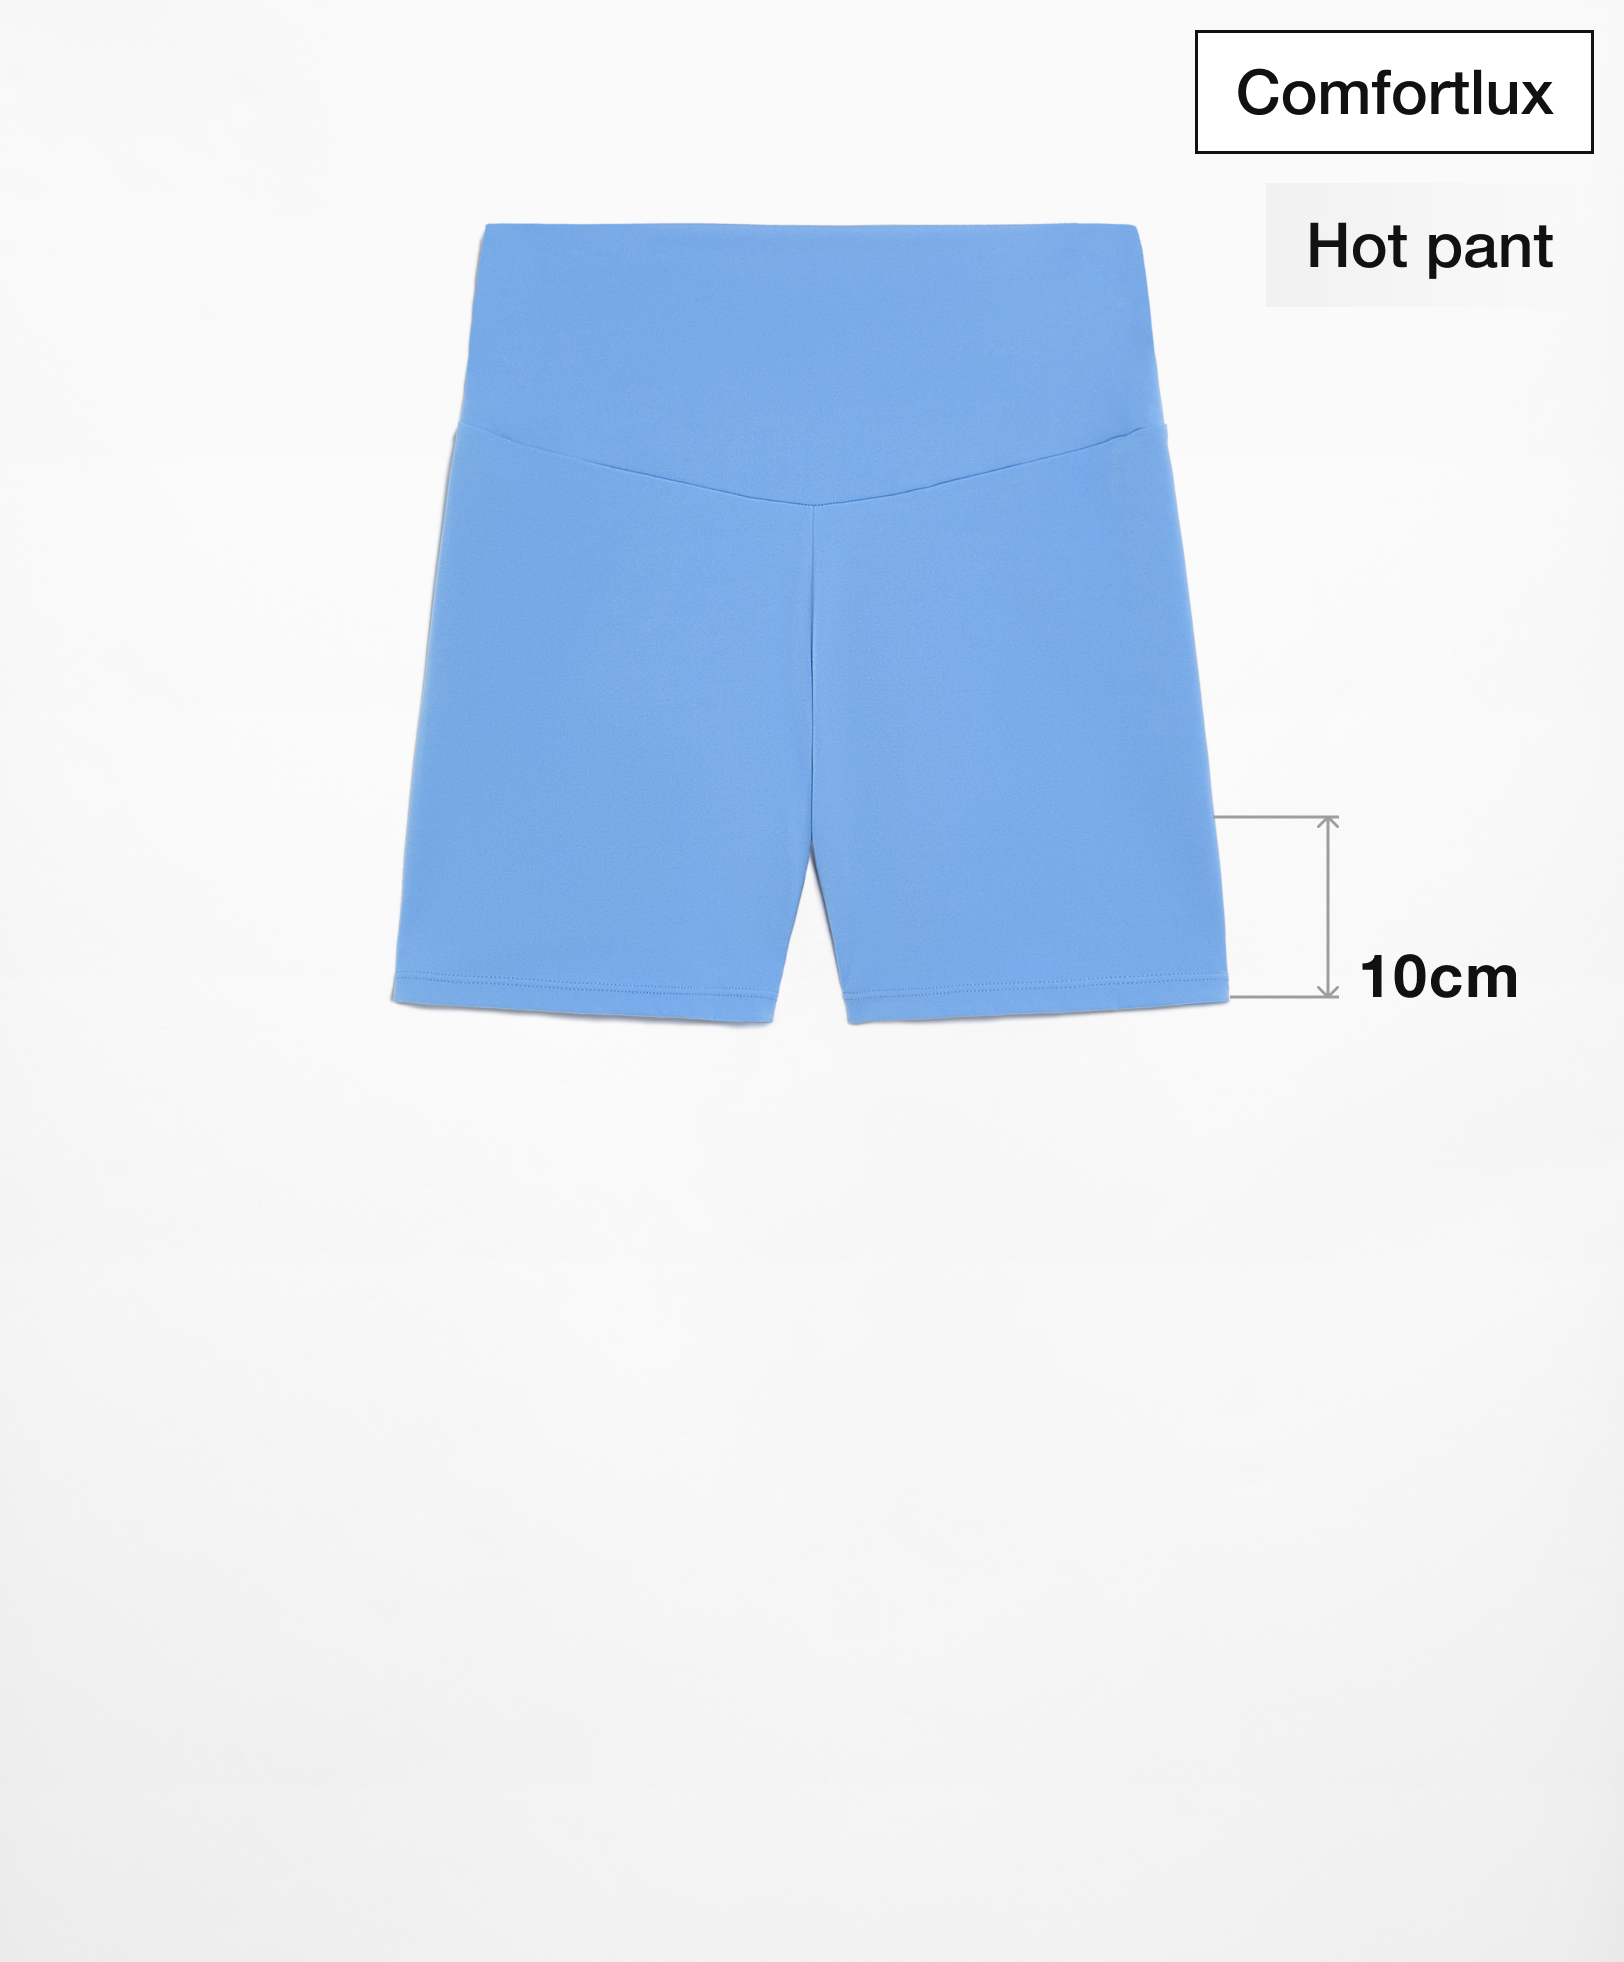 Hot pants high rise comfortlux 10 cm